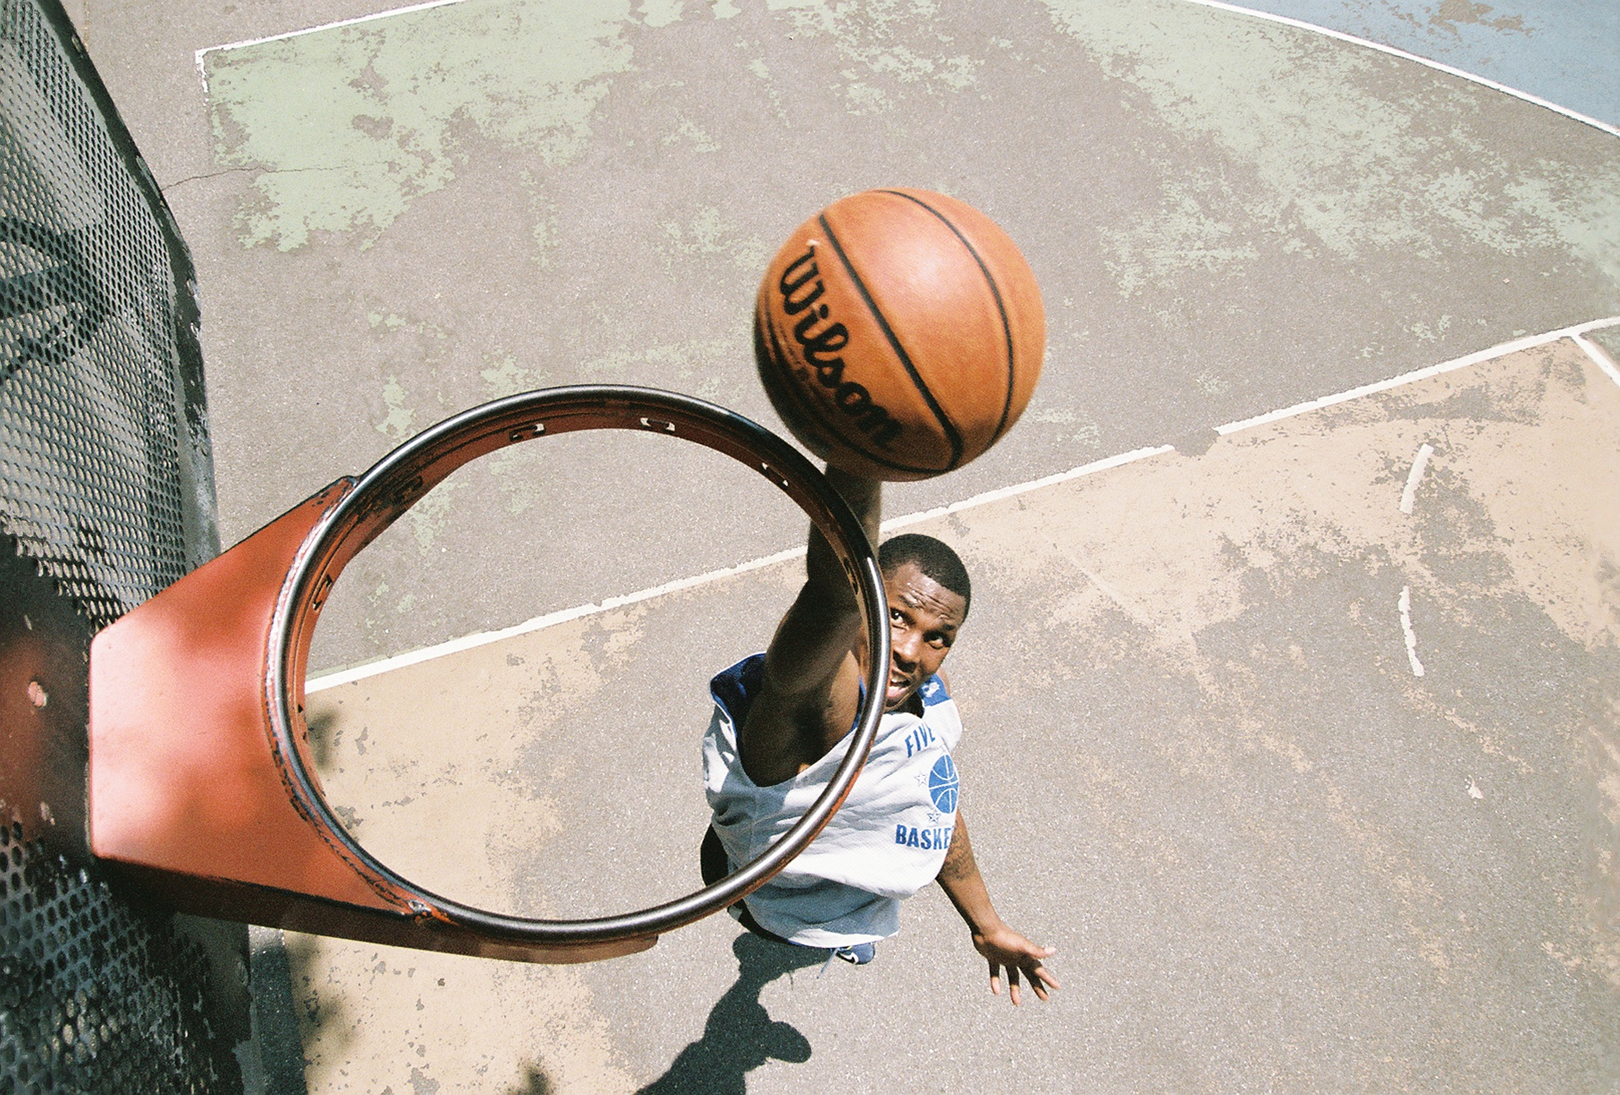 Vista de cima de uma cesta de basquete sem rede, onde um jogador é visto prestes a enterrar uma bola de basquete no aro